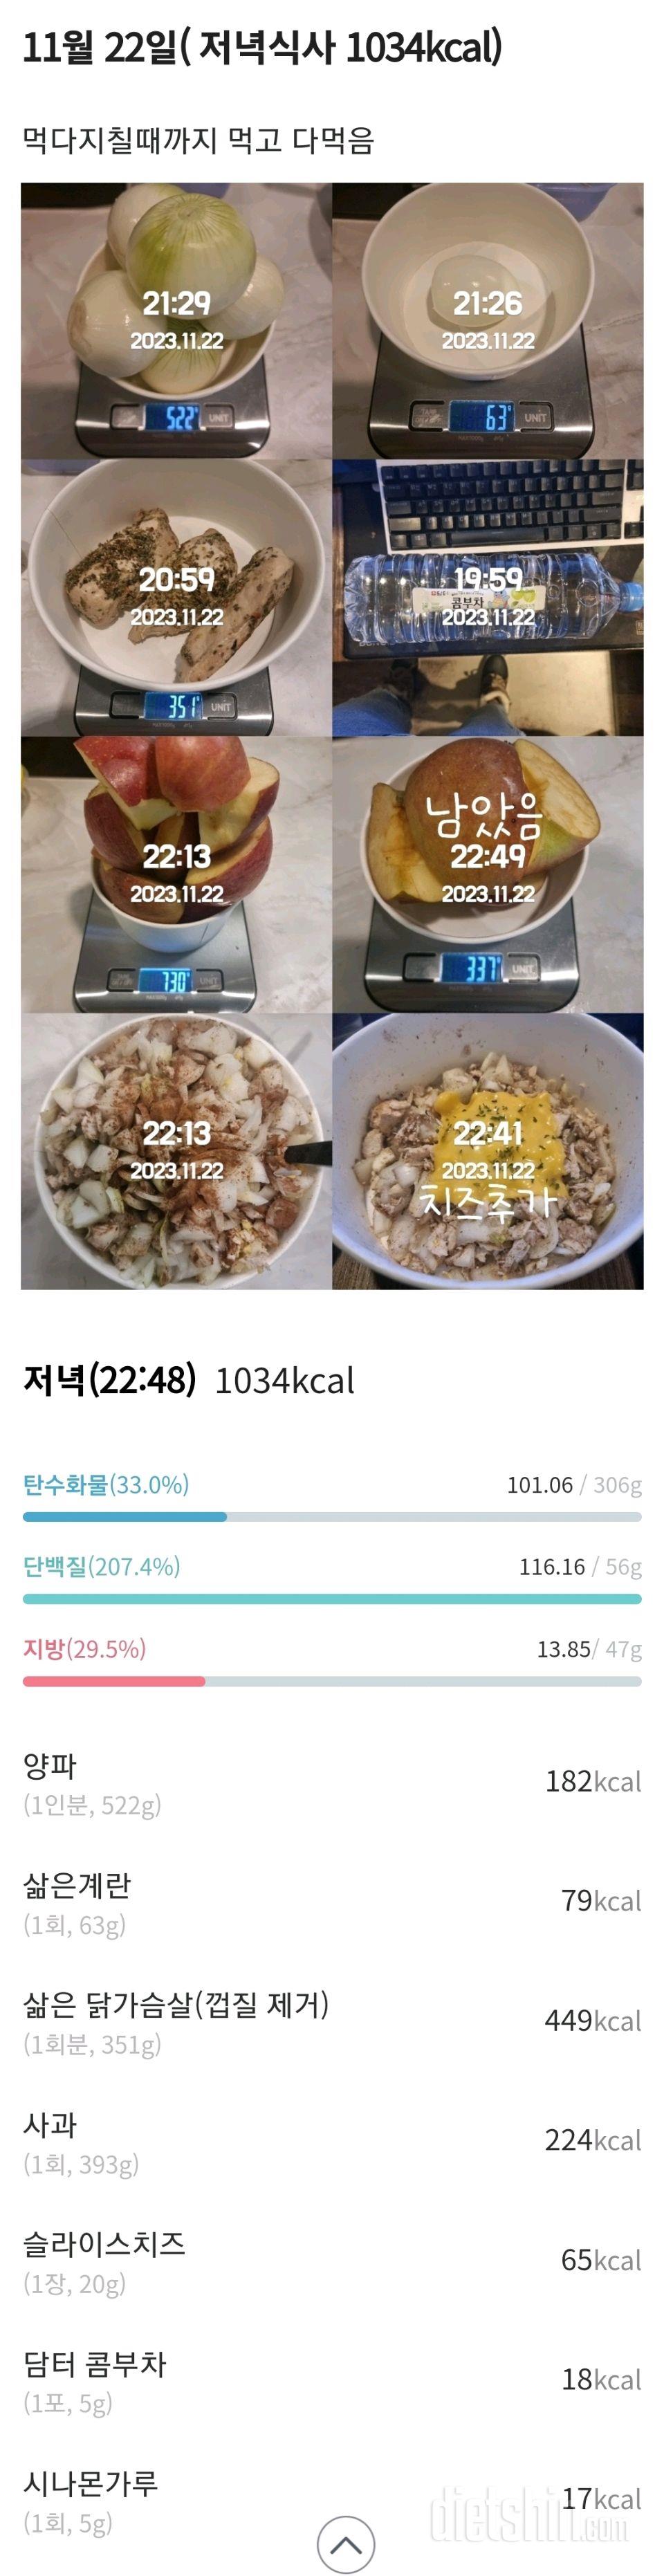 [다신22기]  22일차 공복체중+눈바디+식단